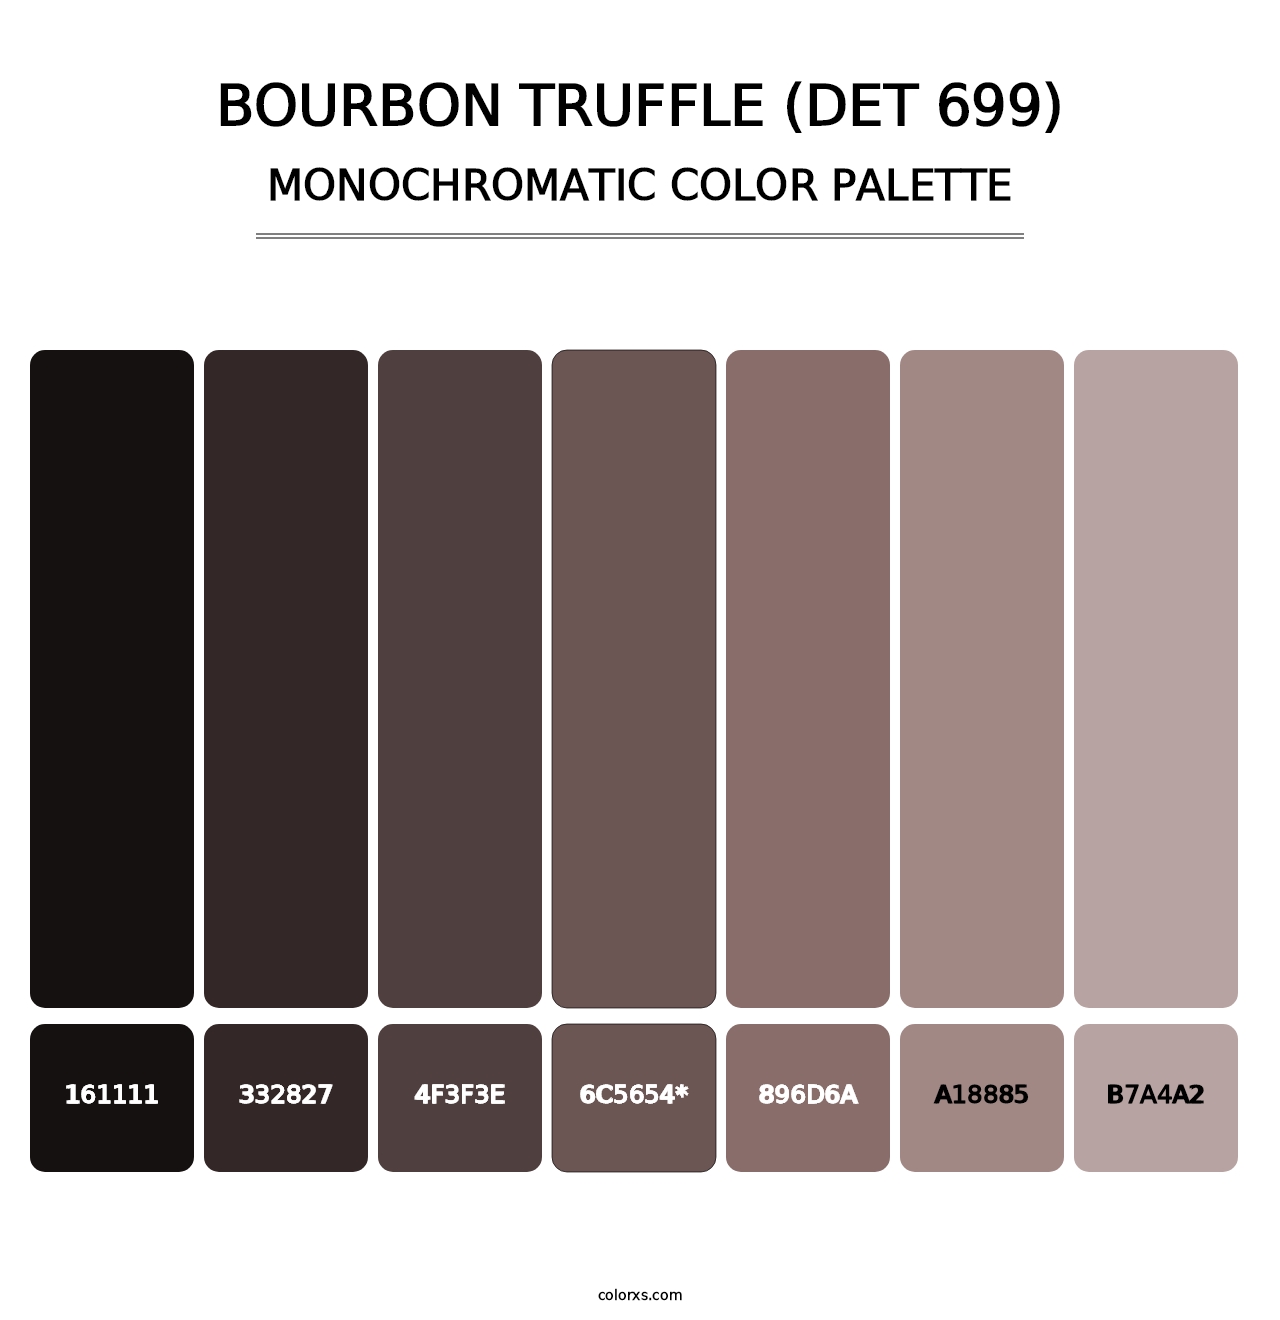 Bourbon Truffle (DET 699) - Monochromatic Color Palette